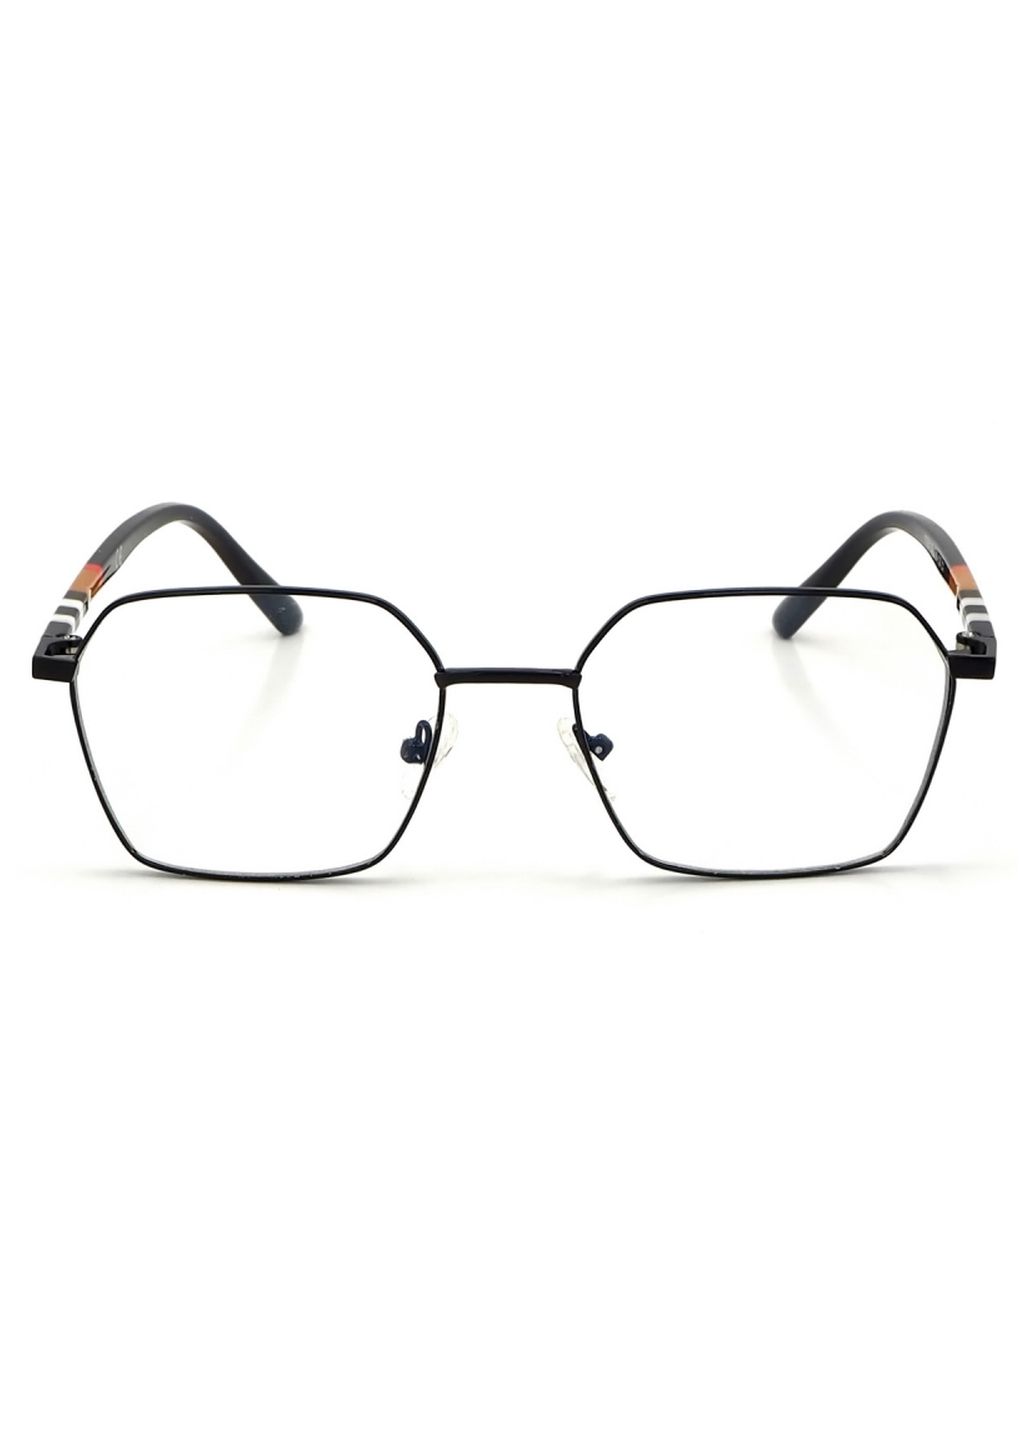 Купить Очки для работы за компьютером Cooper Glasses в черной оправе 124017 в интернет-магазине